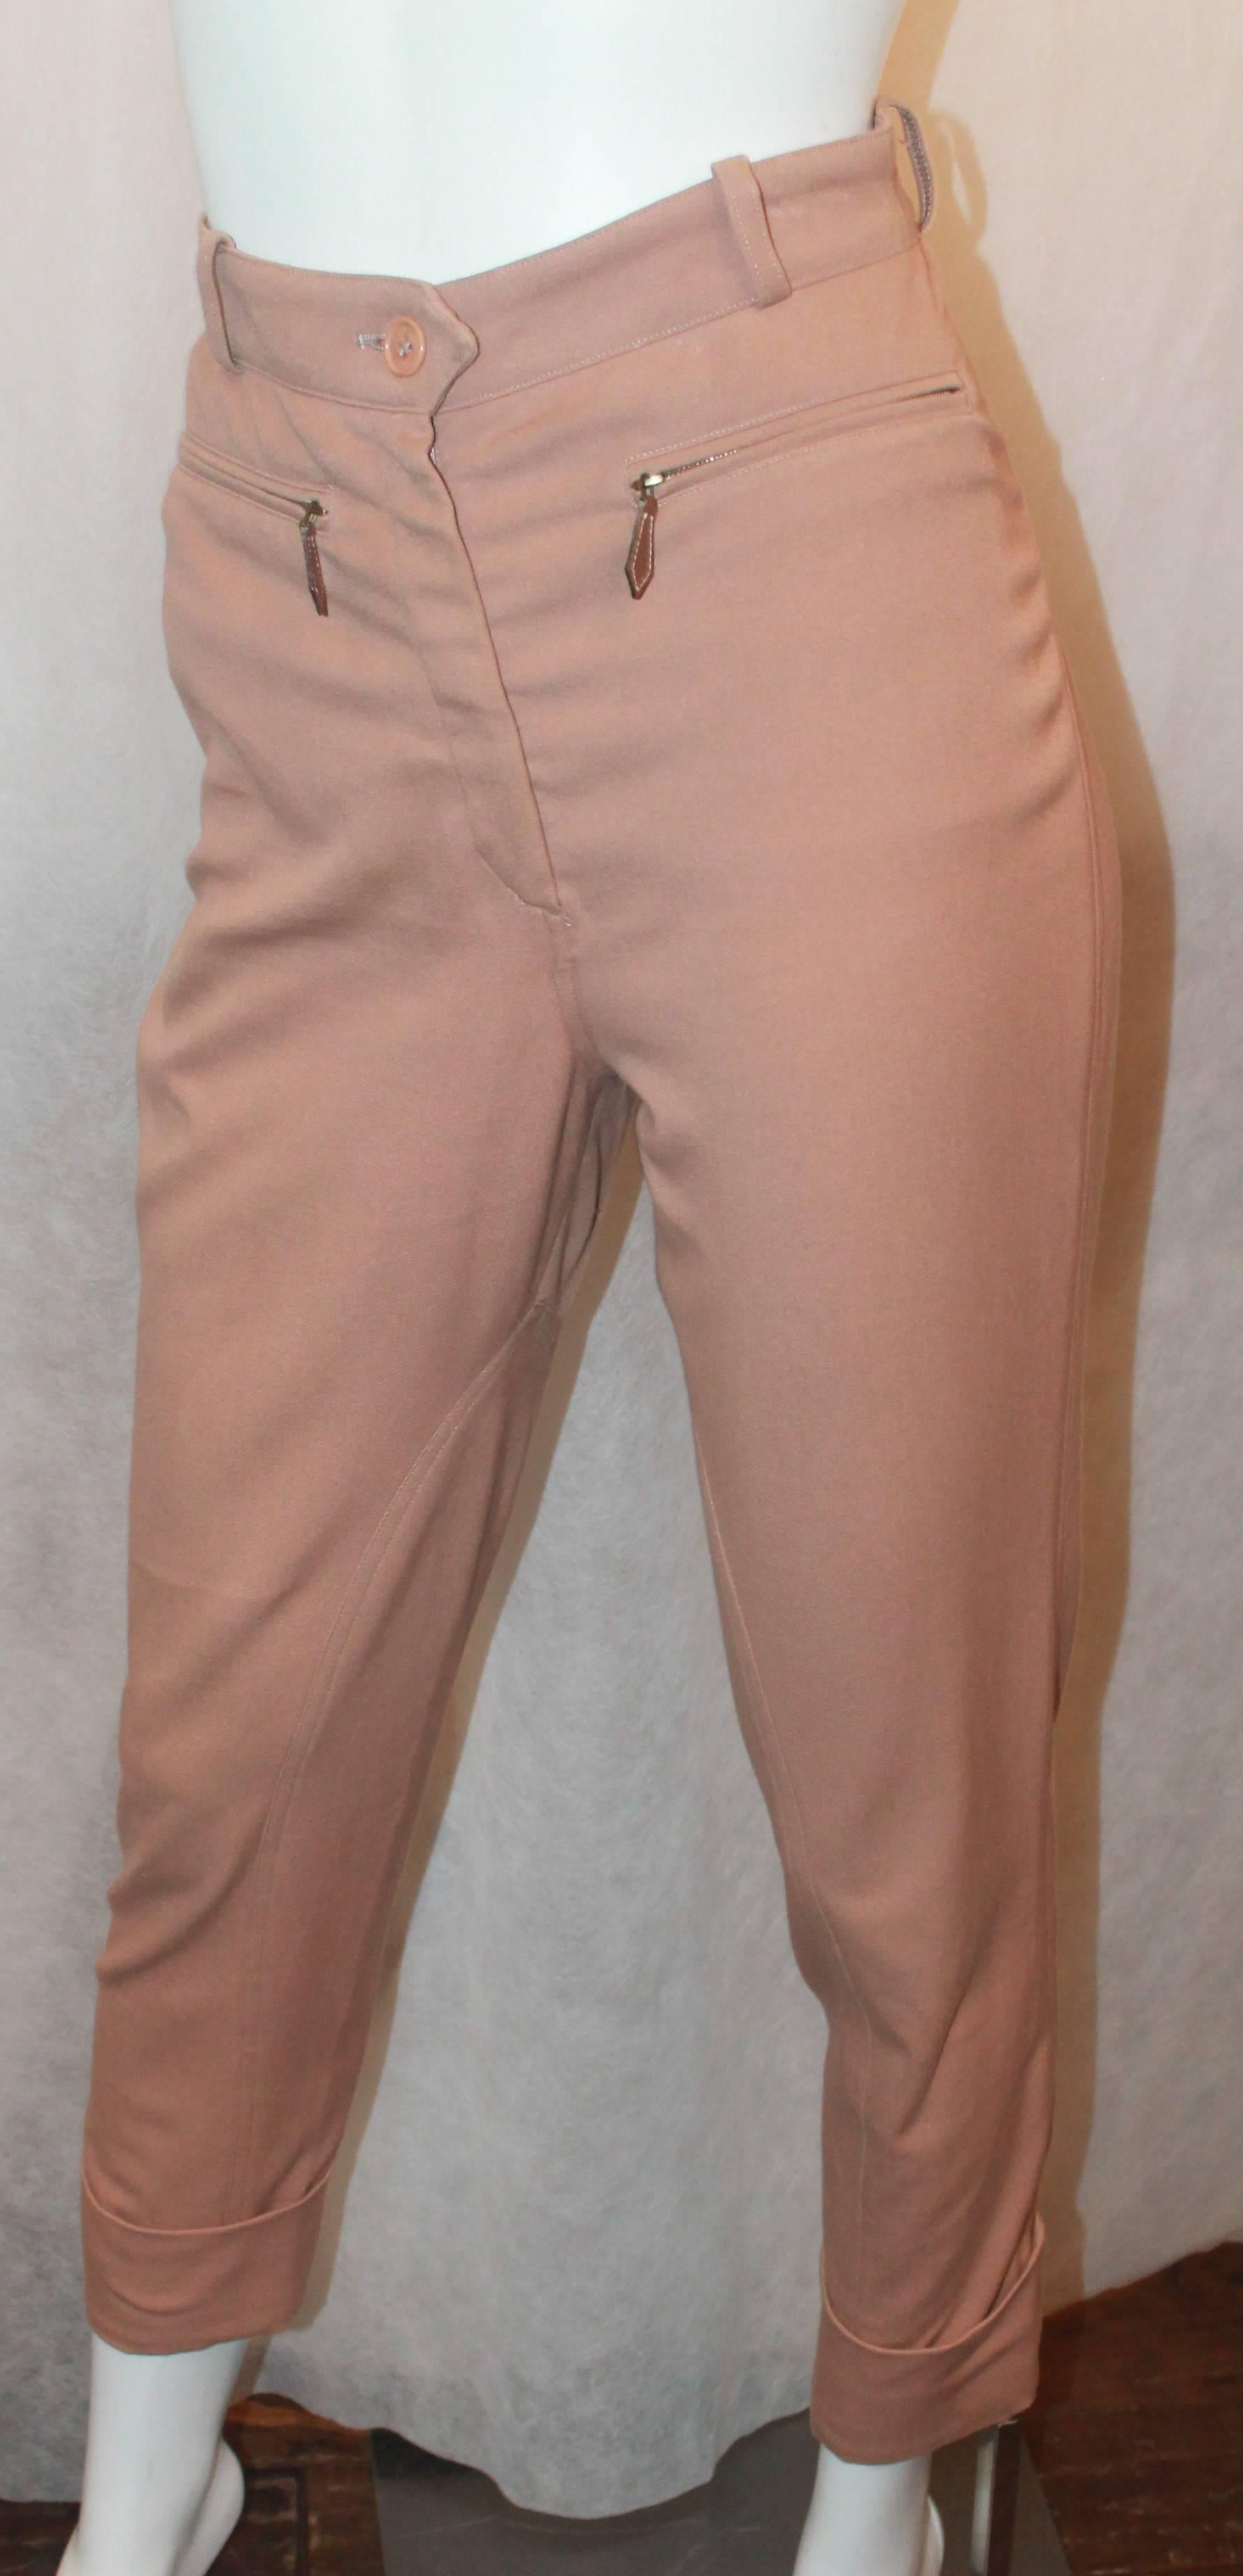 Hermes Vintage Mauve Reithosen mit Leder Detail - 36 - 1990's. Diese Hose ist in gutem Vintage-Zustand mit altersgemäßen Gebrauchsspuren. Sie haben ein Bündchen an der Unterseite und Lederreißverschlüsse. Sie hat 2 Vordertaschen und ist hoch